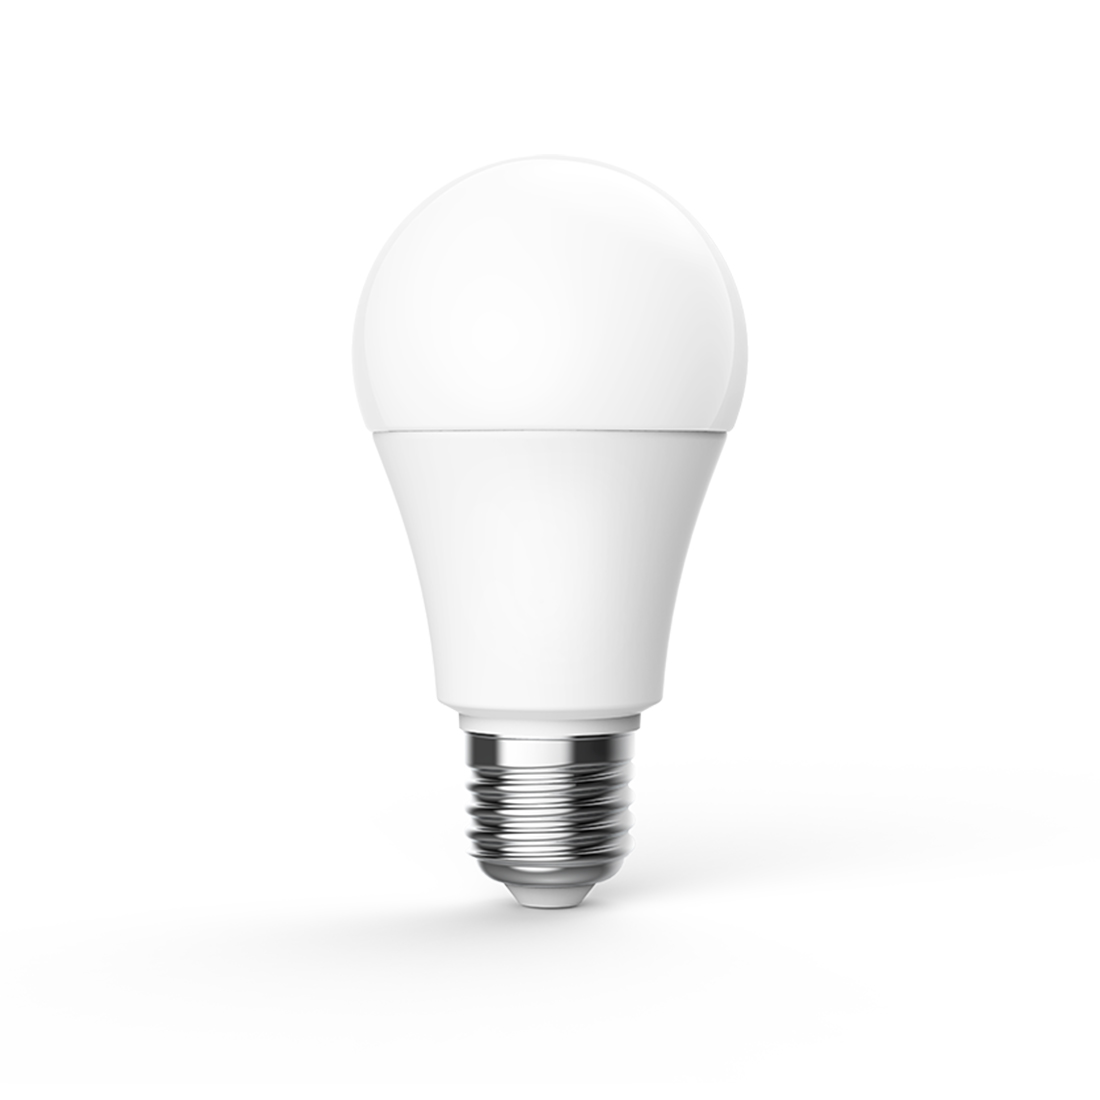 Лампочка, Aqara, LED Bulb T1, LEDLBT1-L01, Протоколы связи: Zigbee, Bluetooth, Вольтаж: 220-240 V~, 